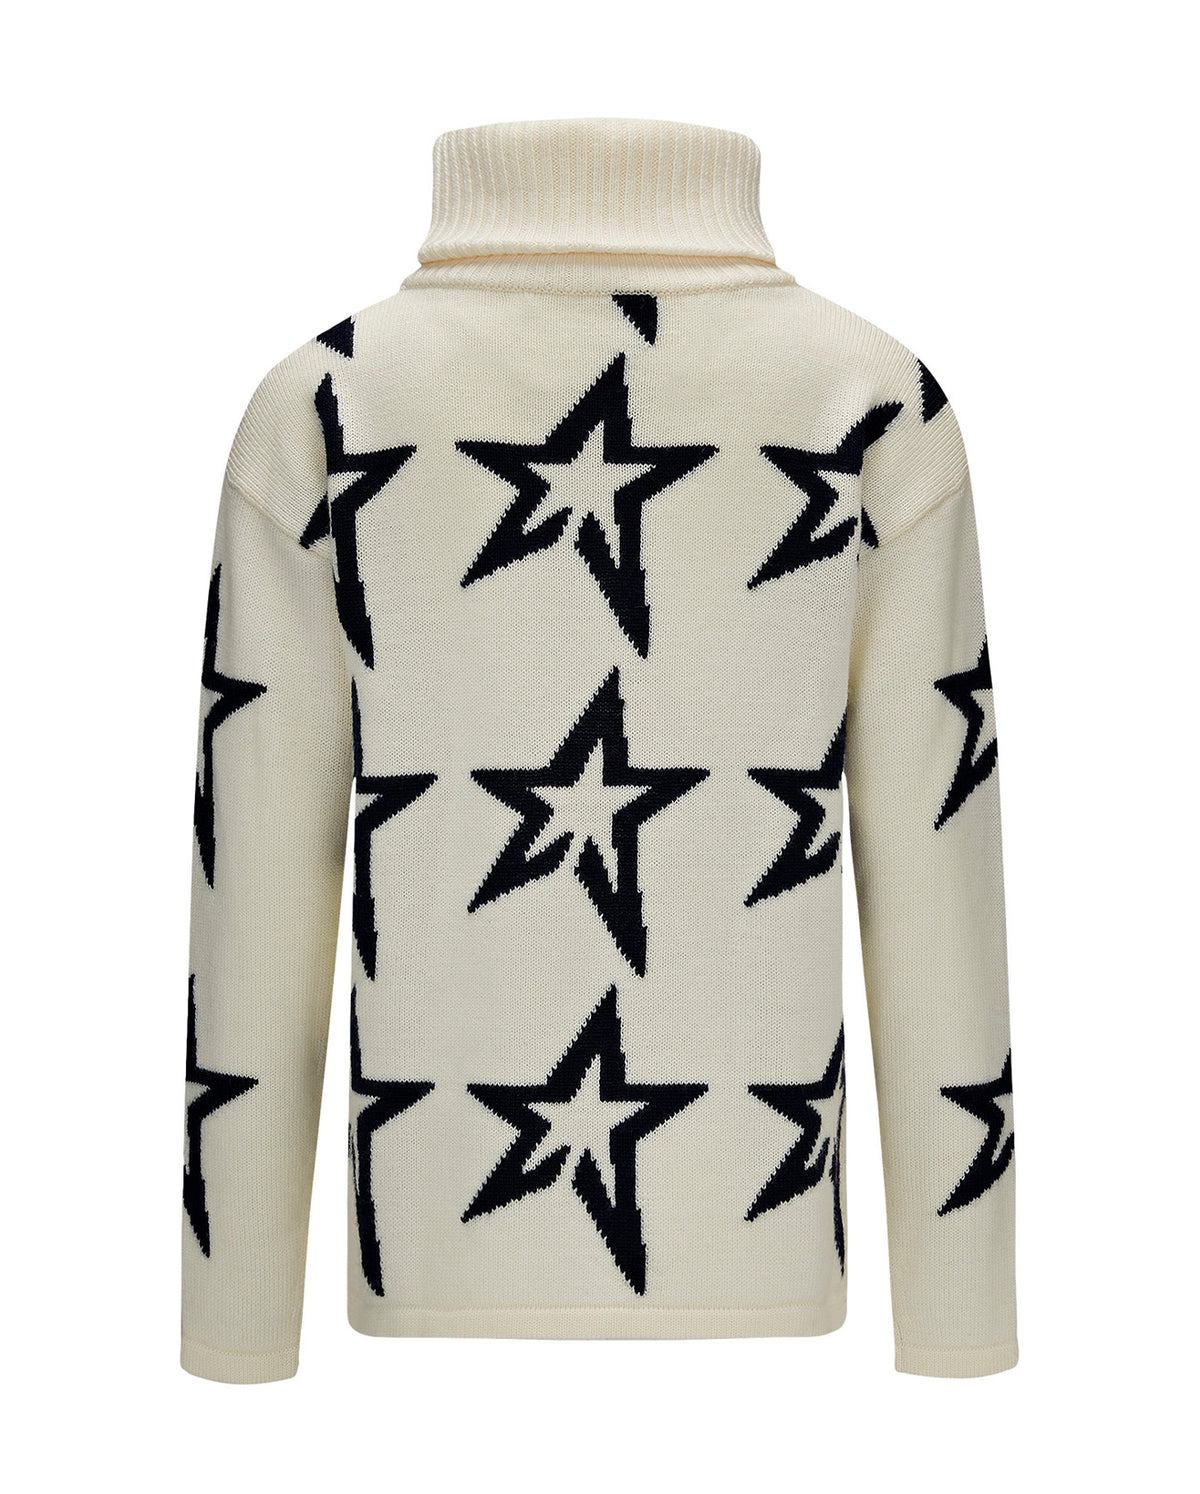 Stardust Sweater - Snow White/Navy Star